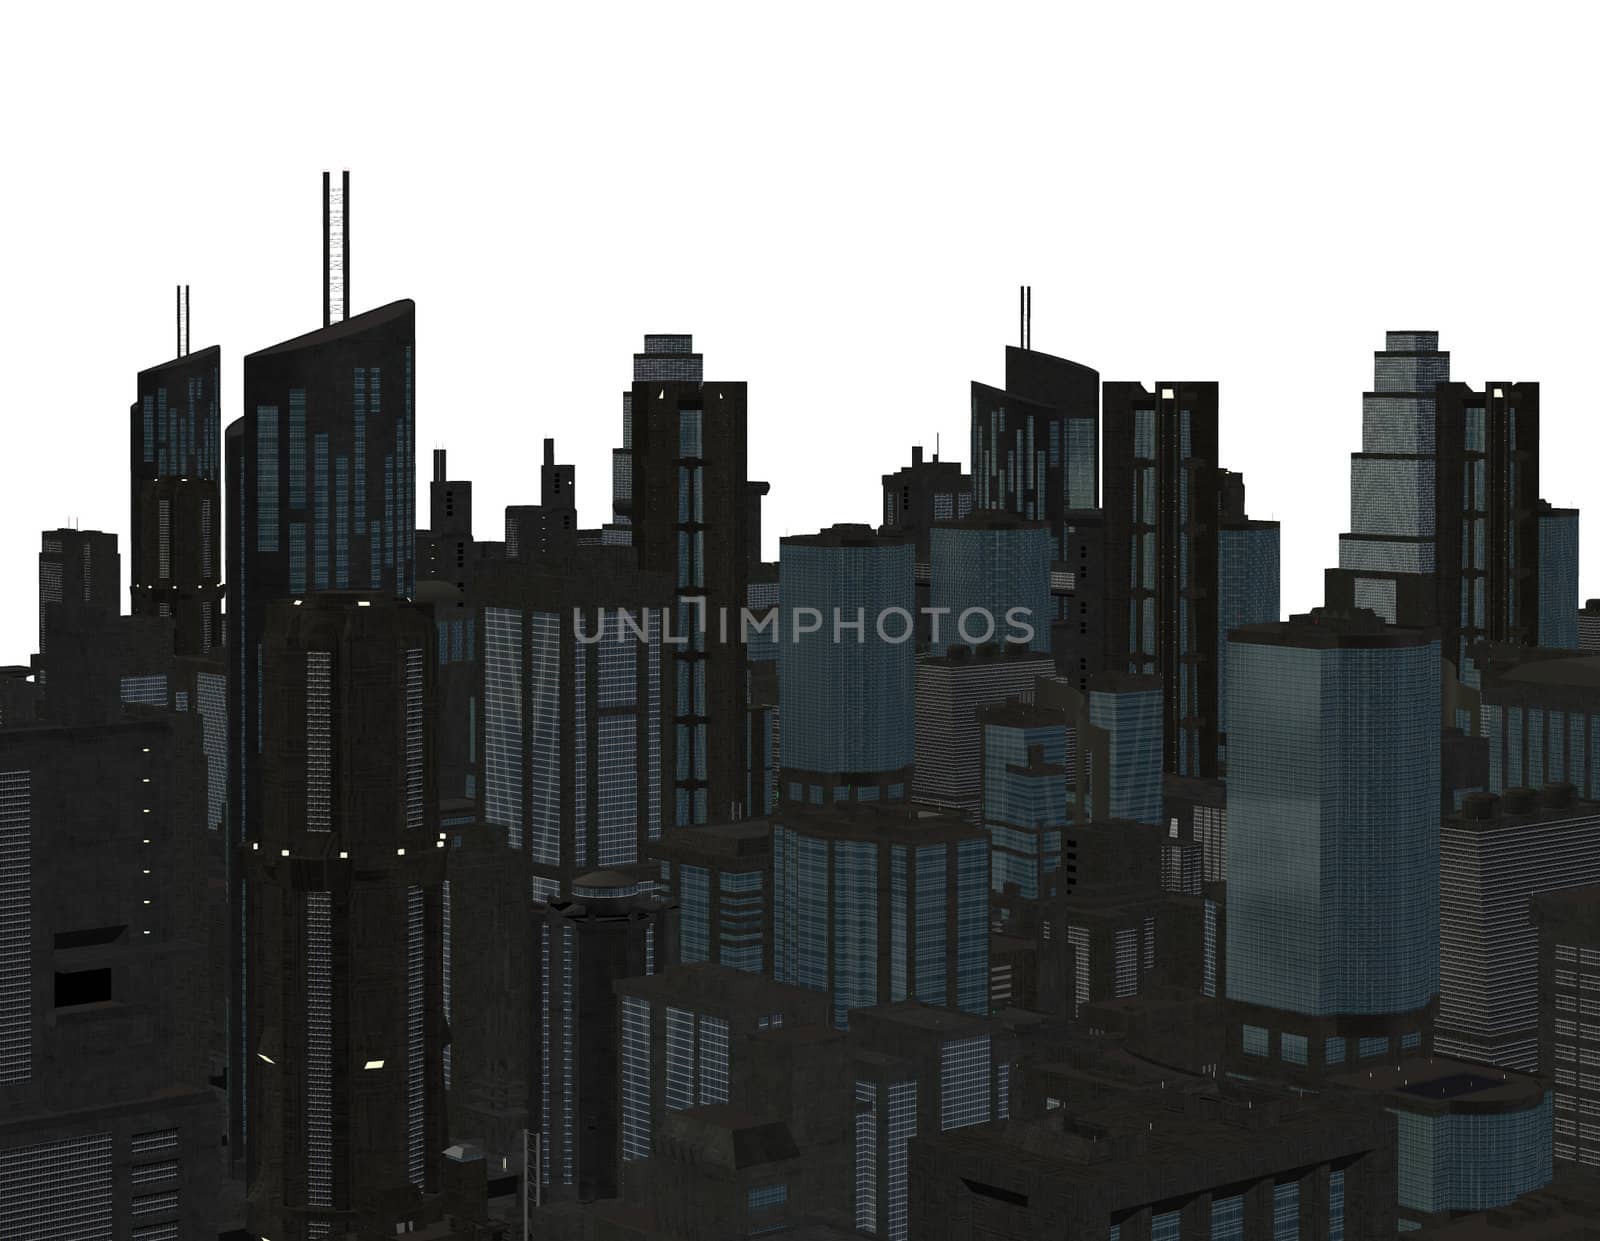 Cityscape by kathygold